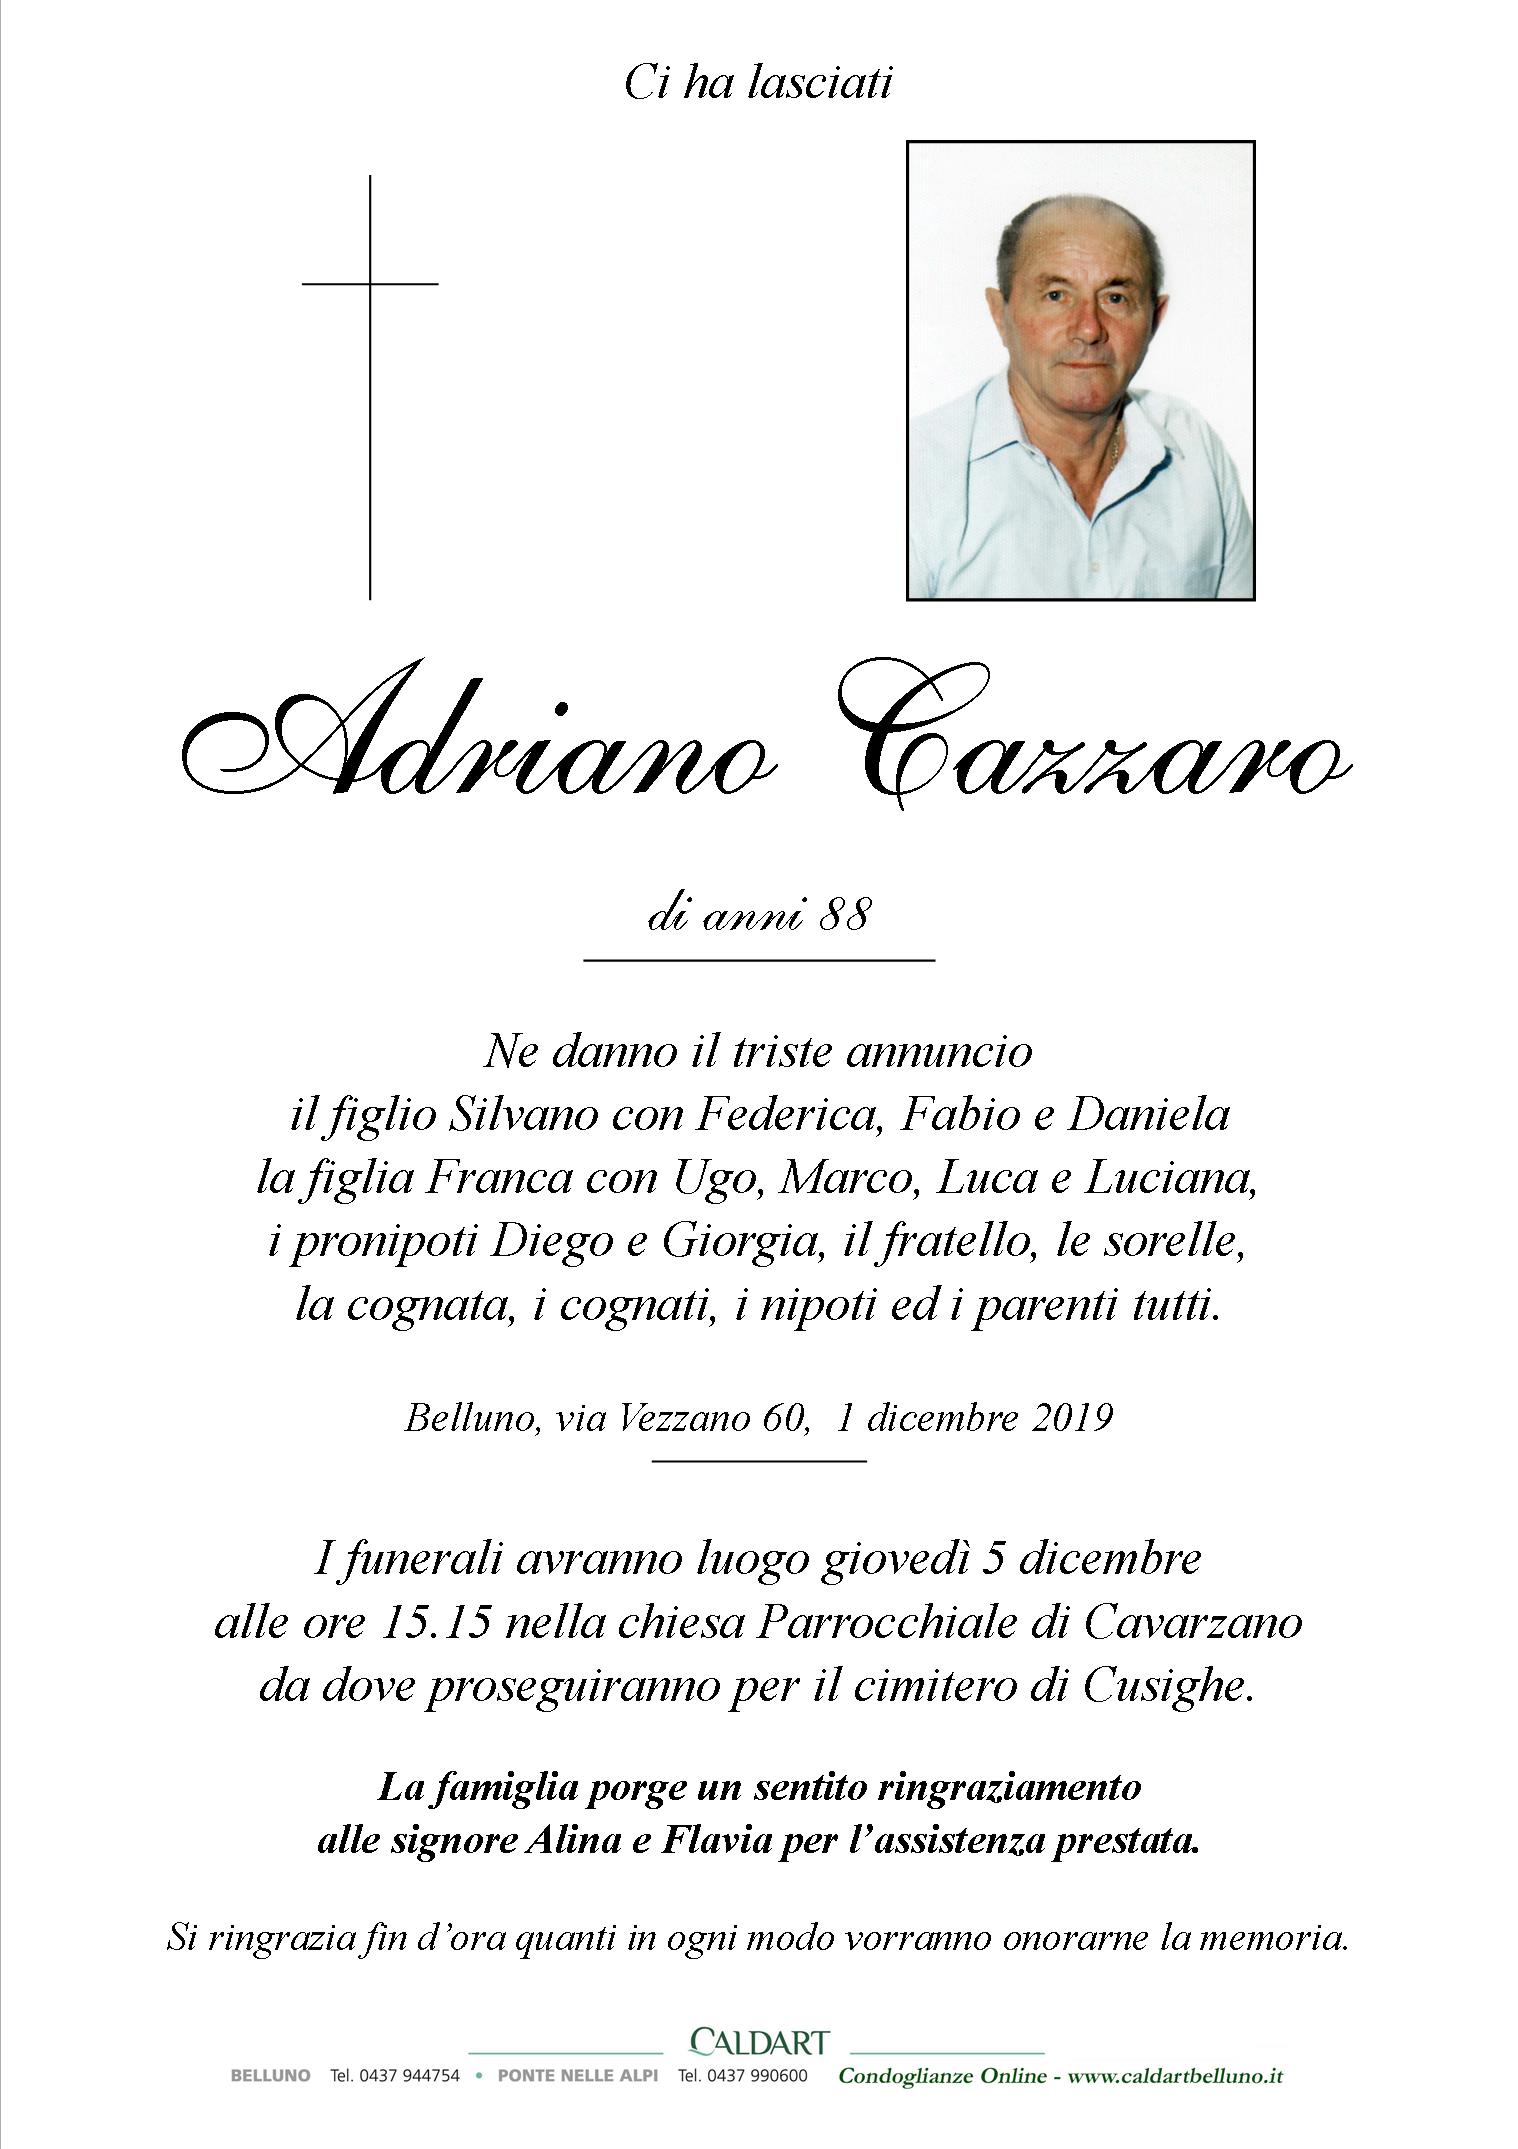 Cazzaro Adriano